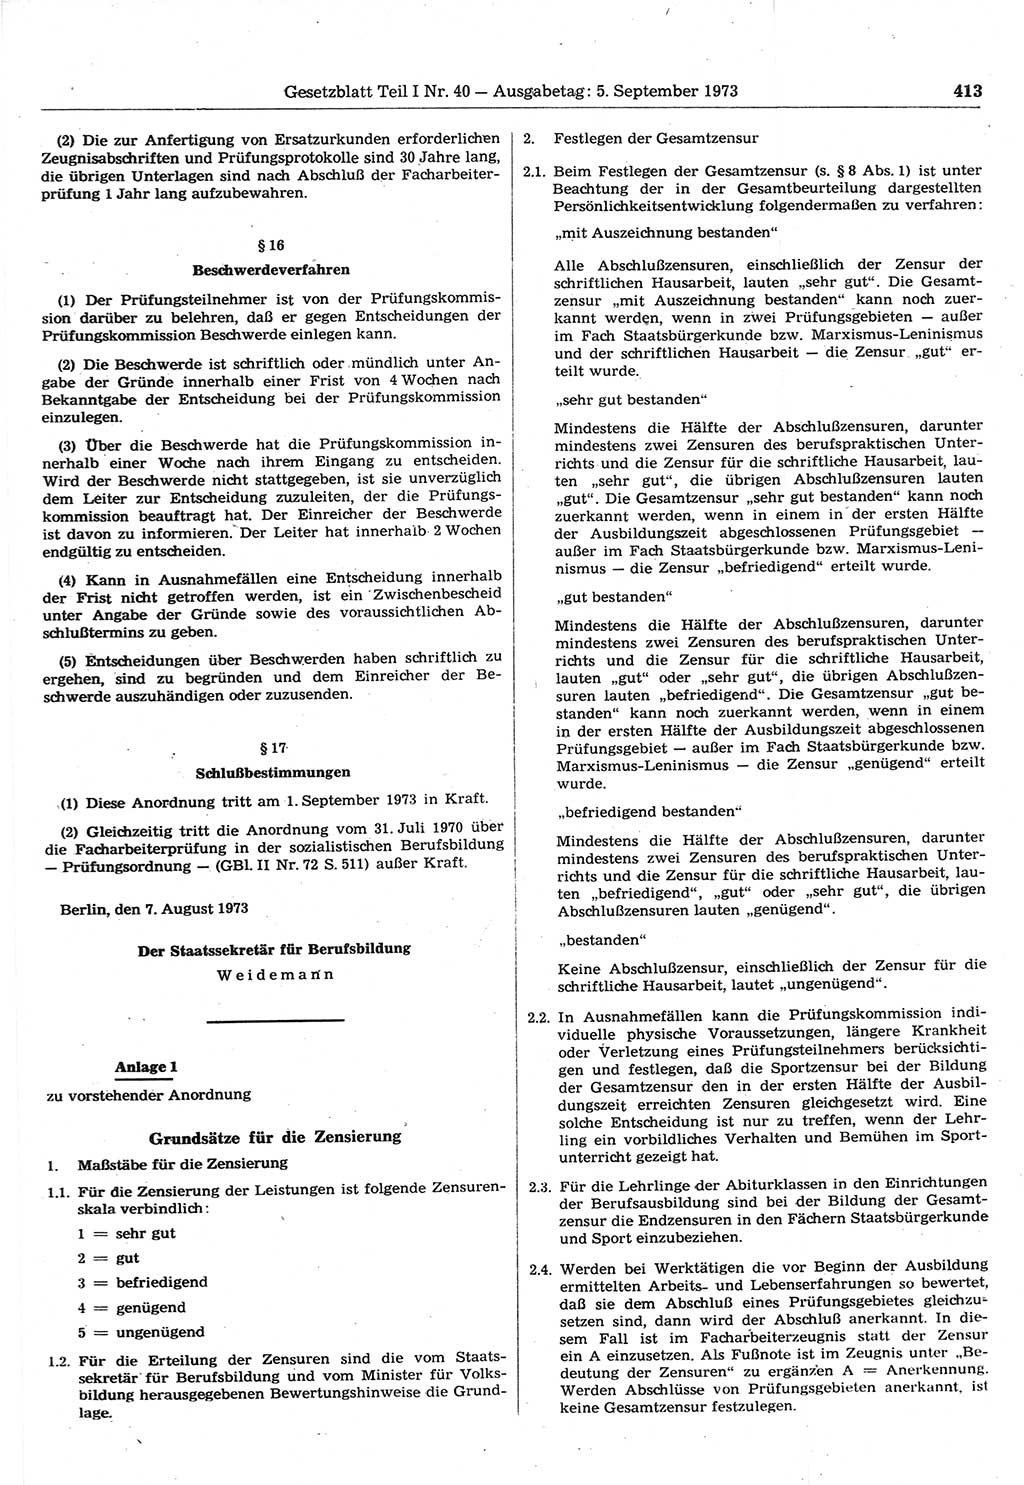 Gesetzblatt (GBl.) der Deutschen Demokratischen Republik (DDR) Teil Ⅰ 1973, Seite 413 (GBl. DDR Ⅰ 1973, S. 413)